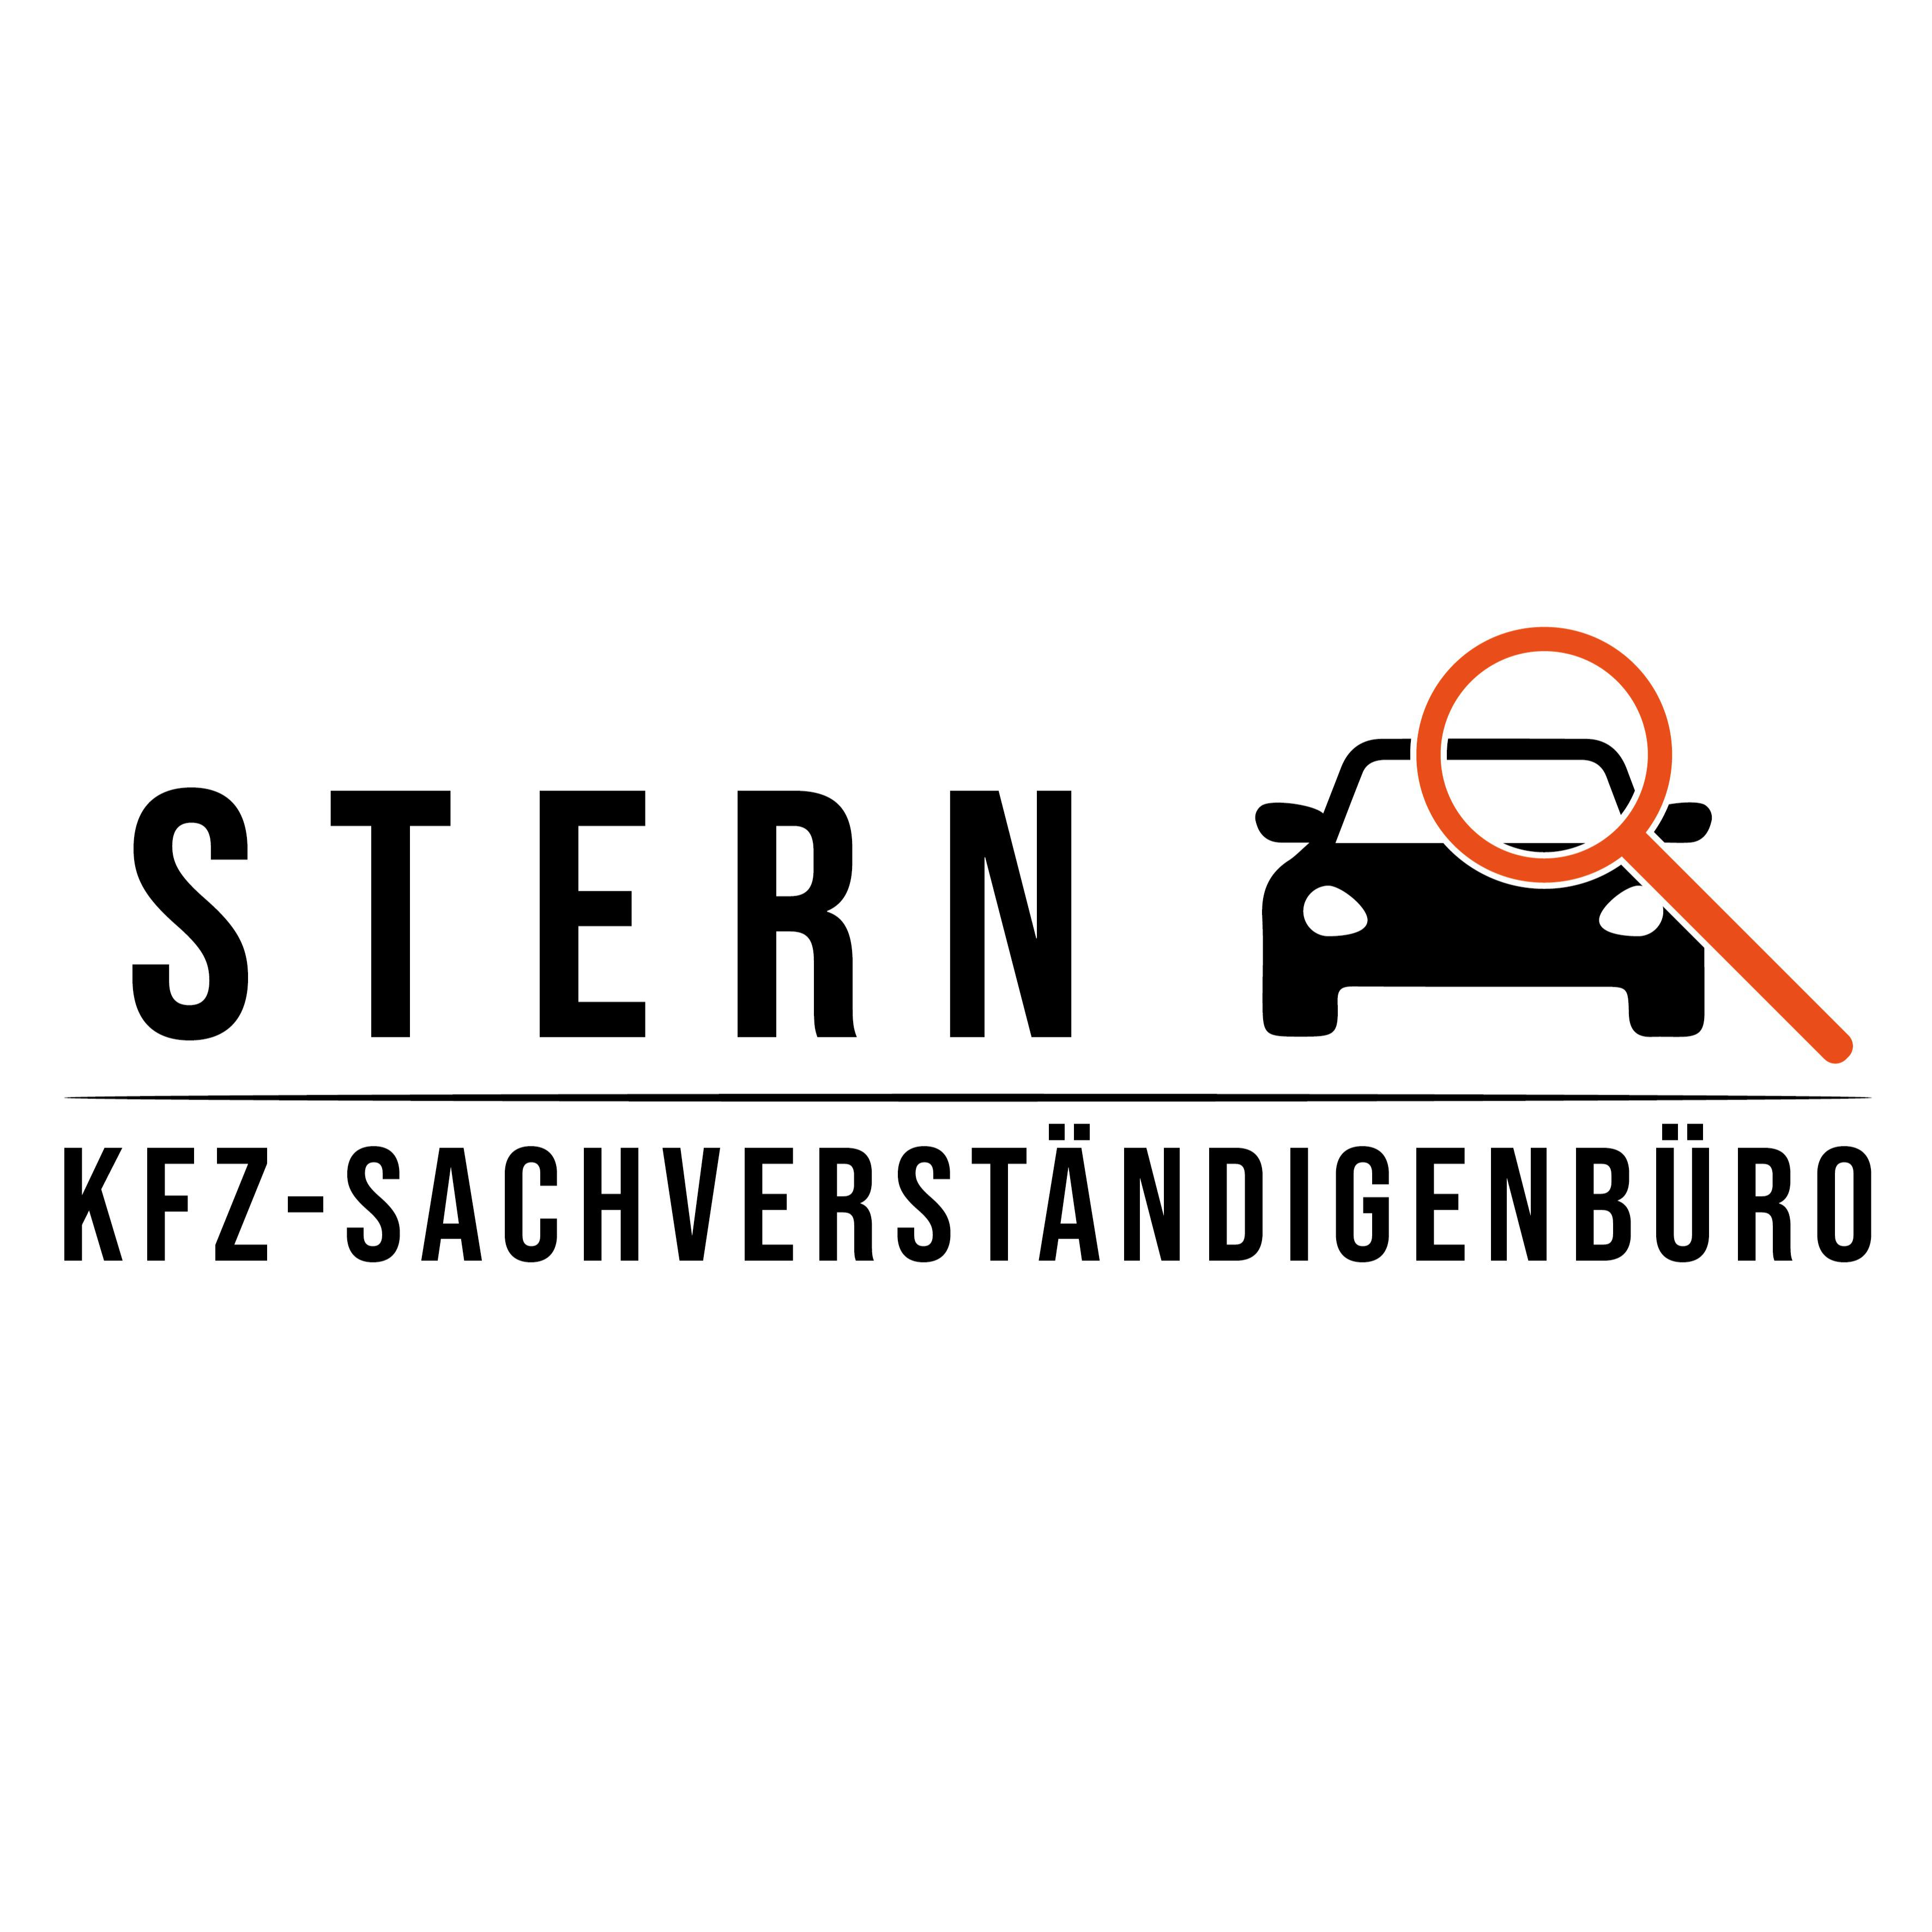 KFZ Sachverständigenbüro Stern Inh. Yildiray Yildiz in Bielefeld - Logo